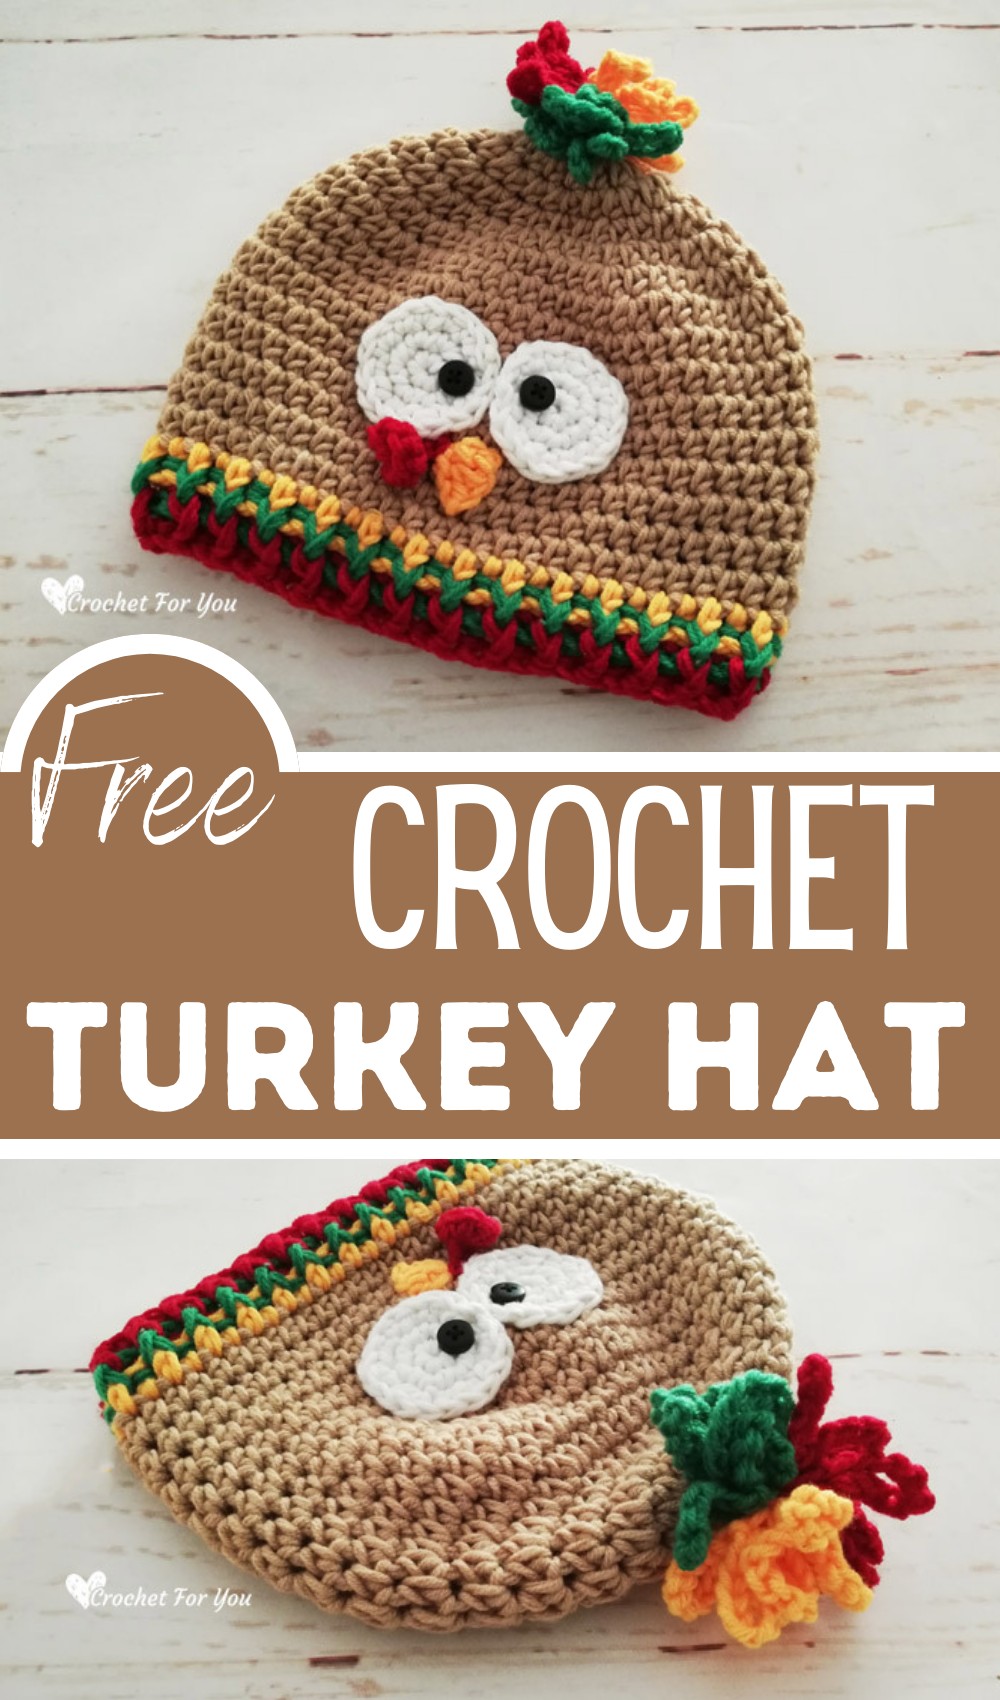 Crochet Turkey Hat Free Pattern